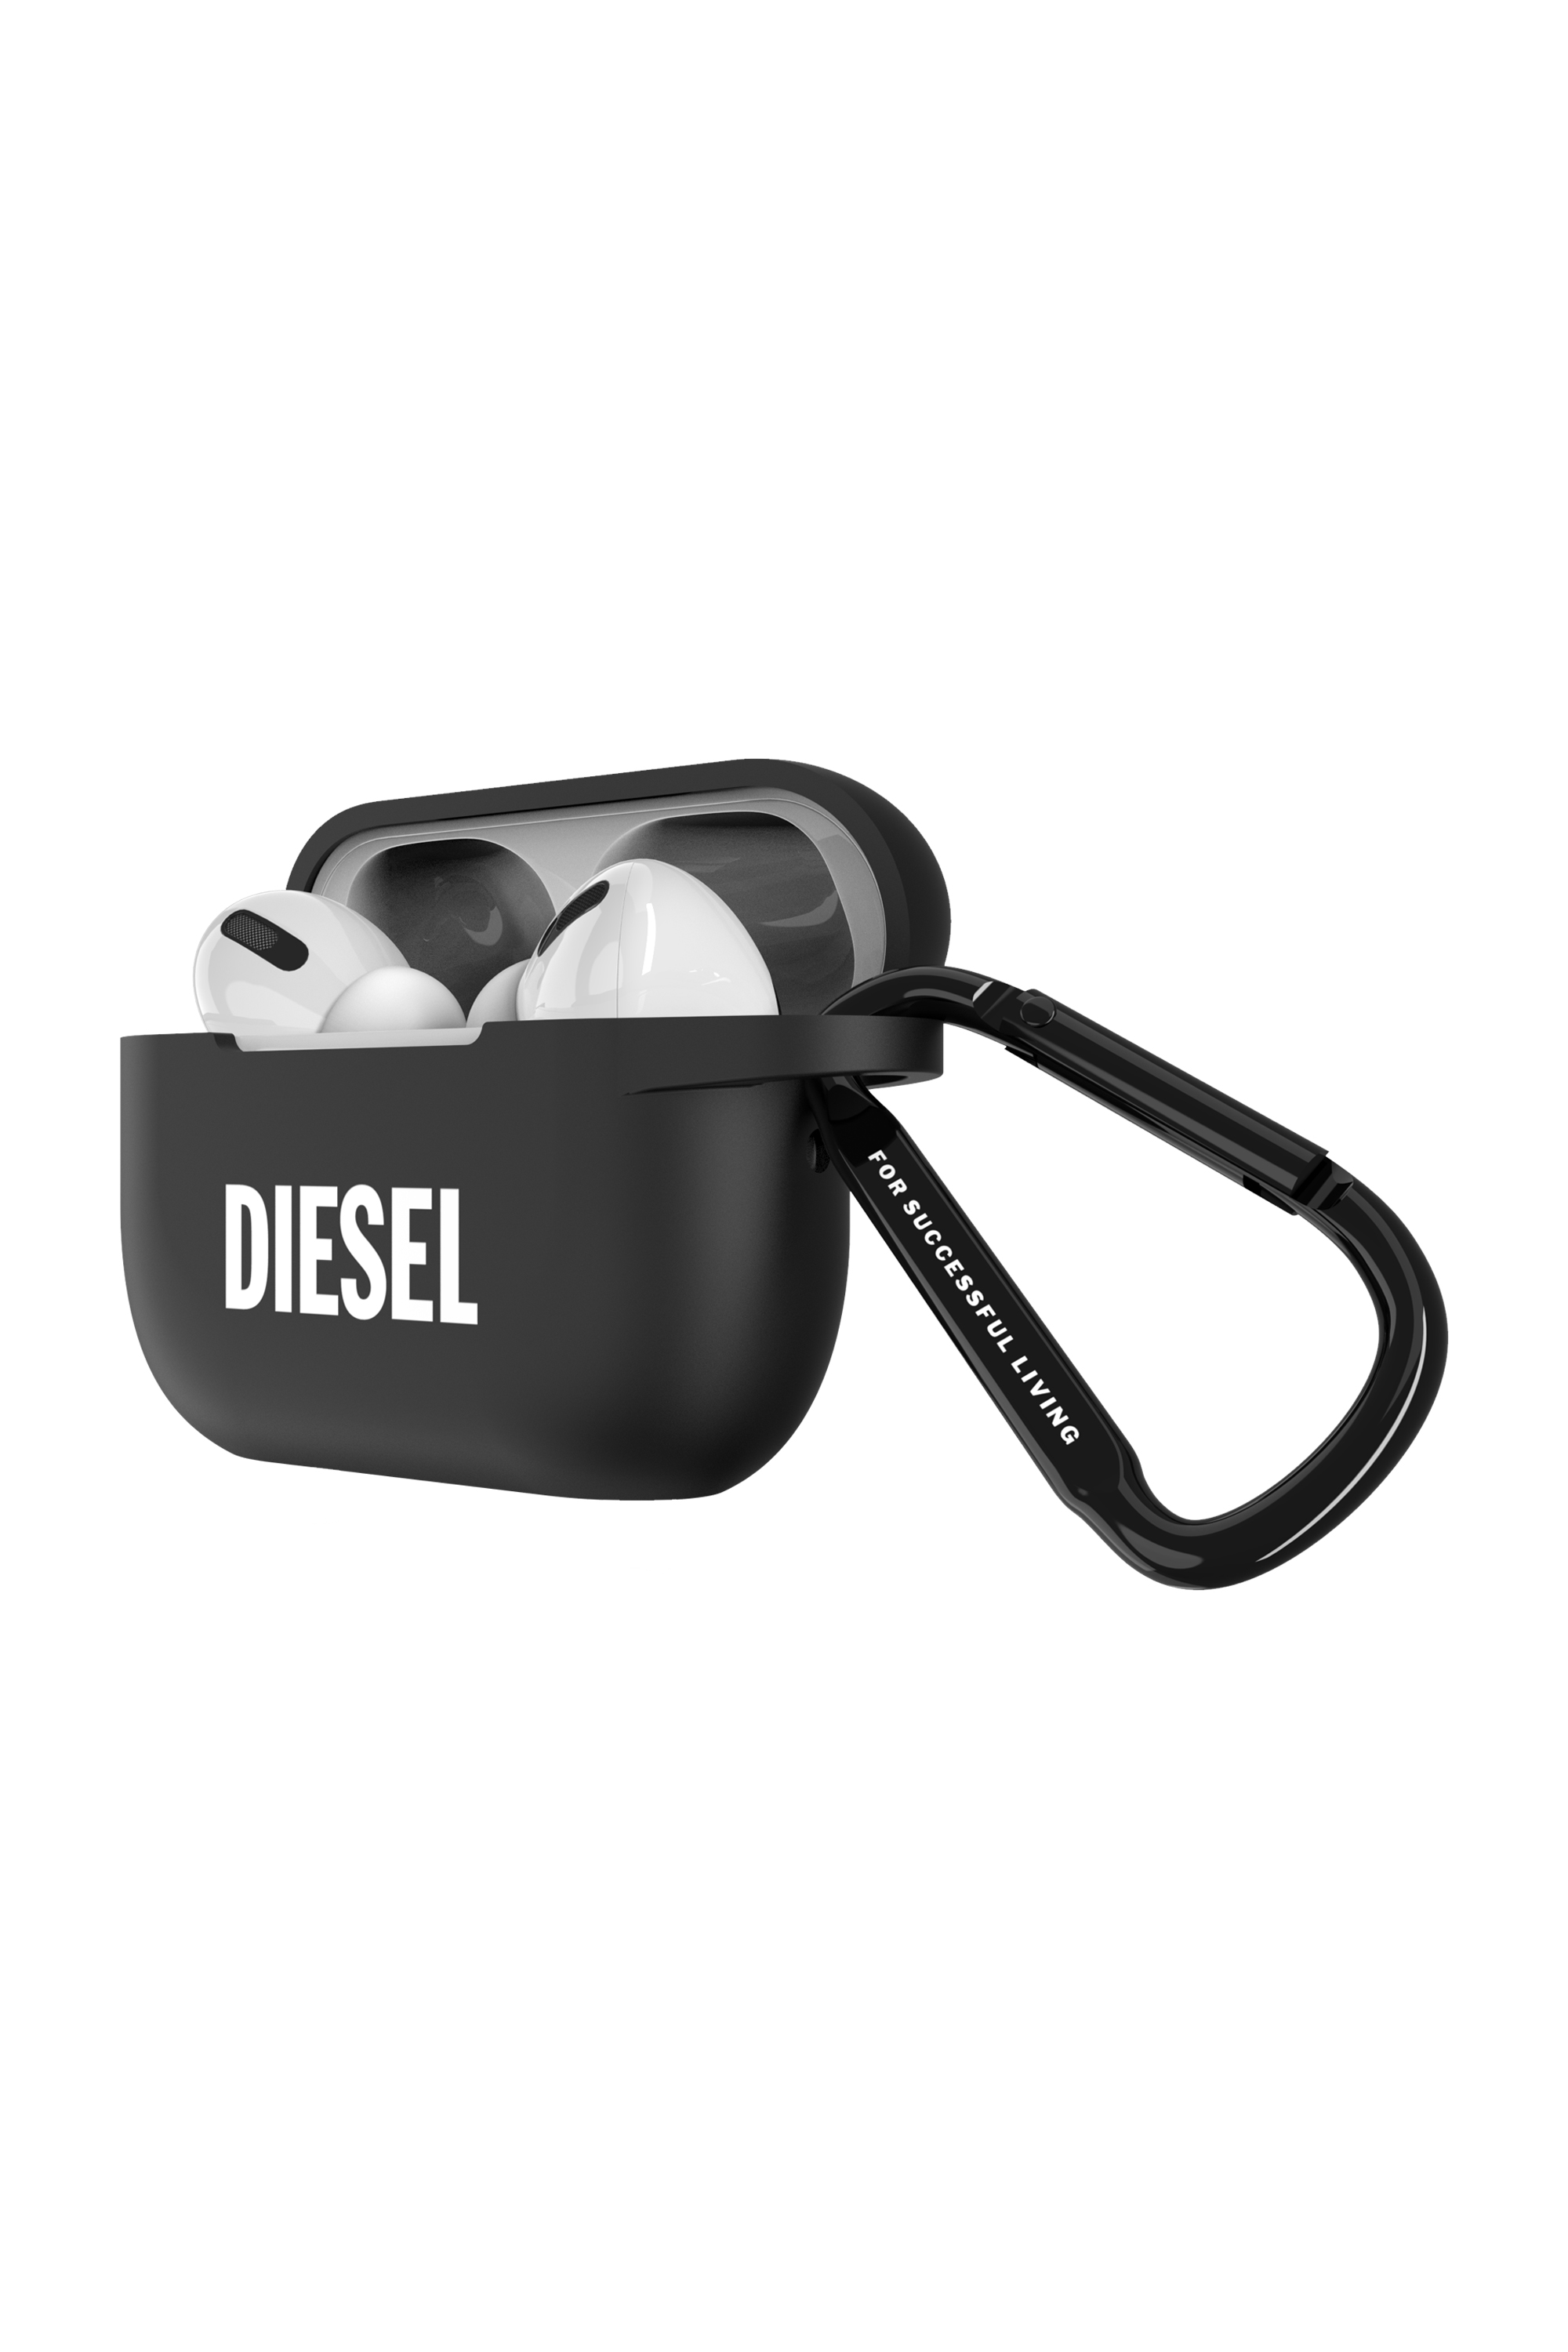 Diesel - 52955 AIRPOD CASE, Black - Image 3